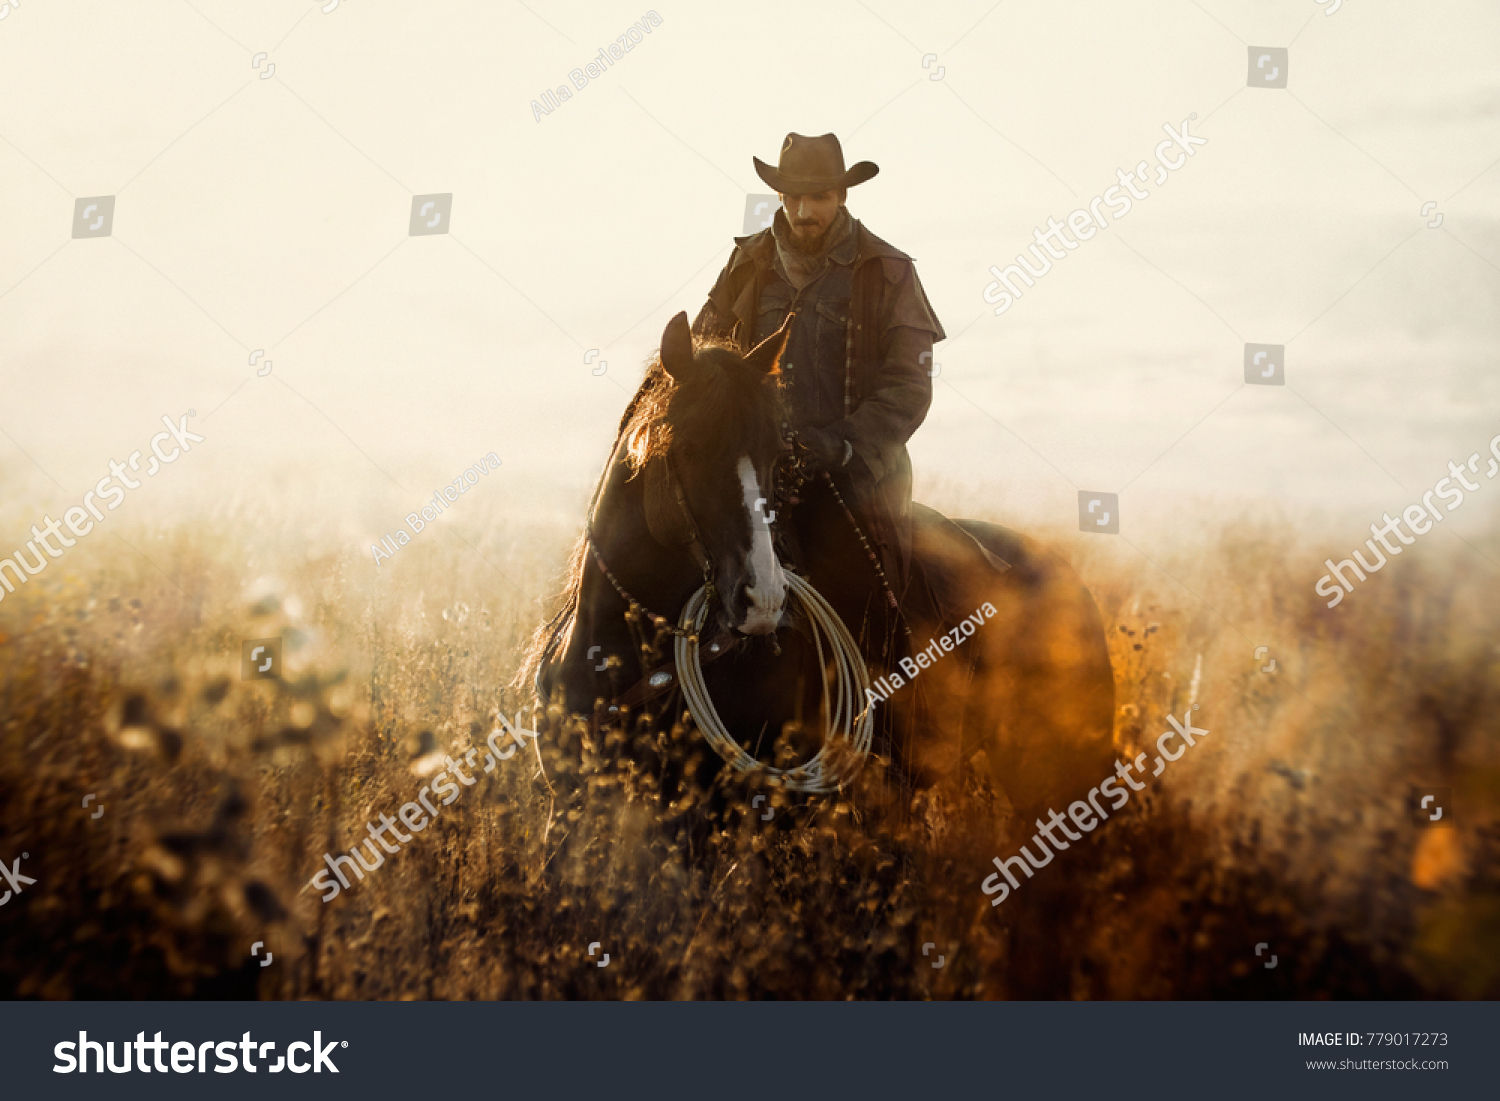 Western cowboy portrait #779017273